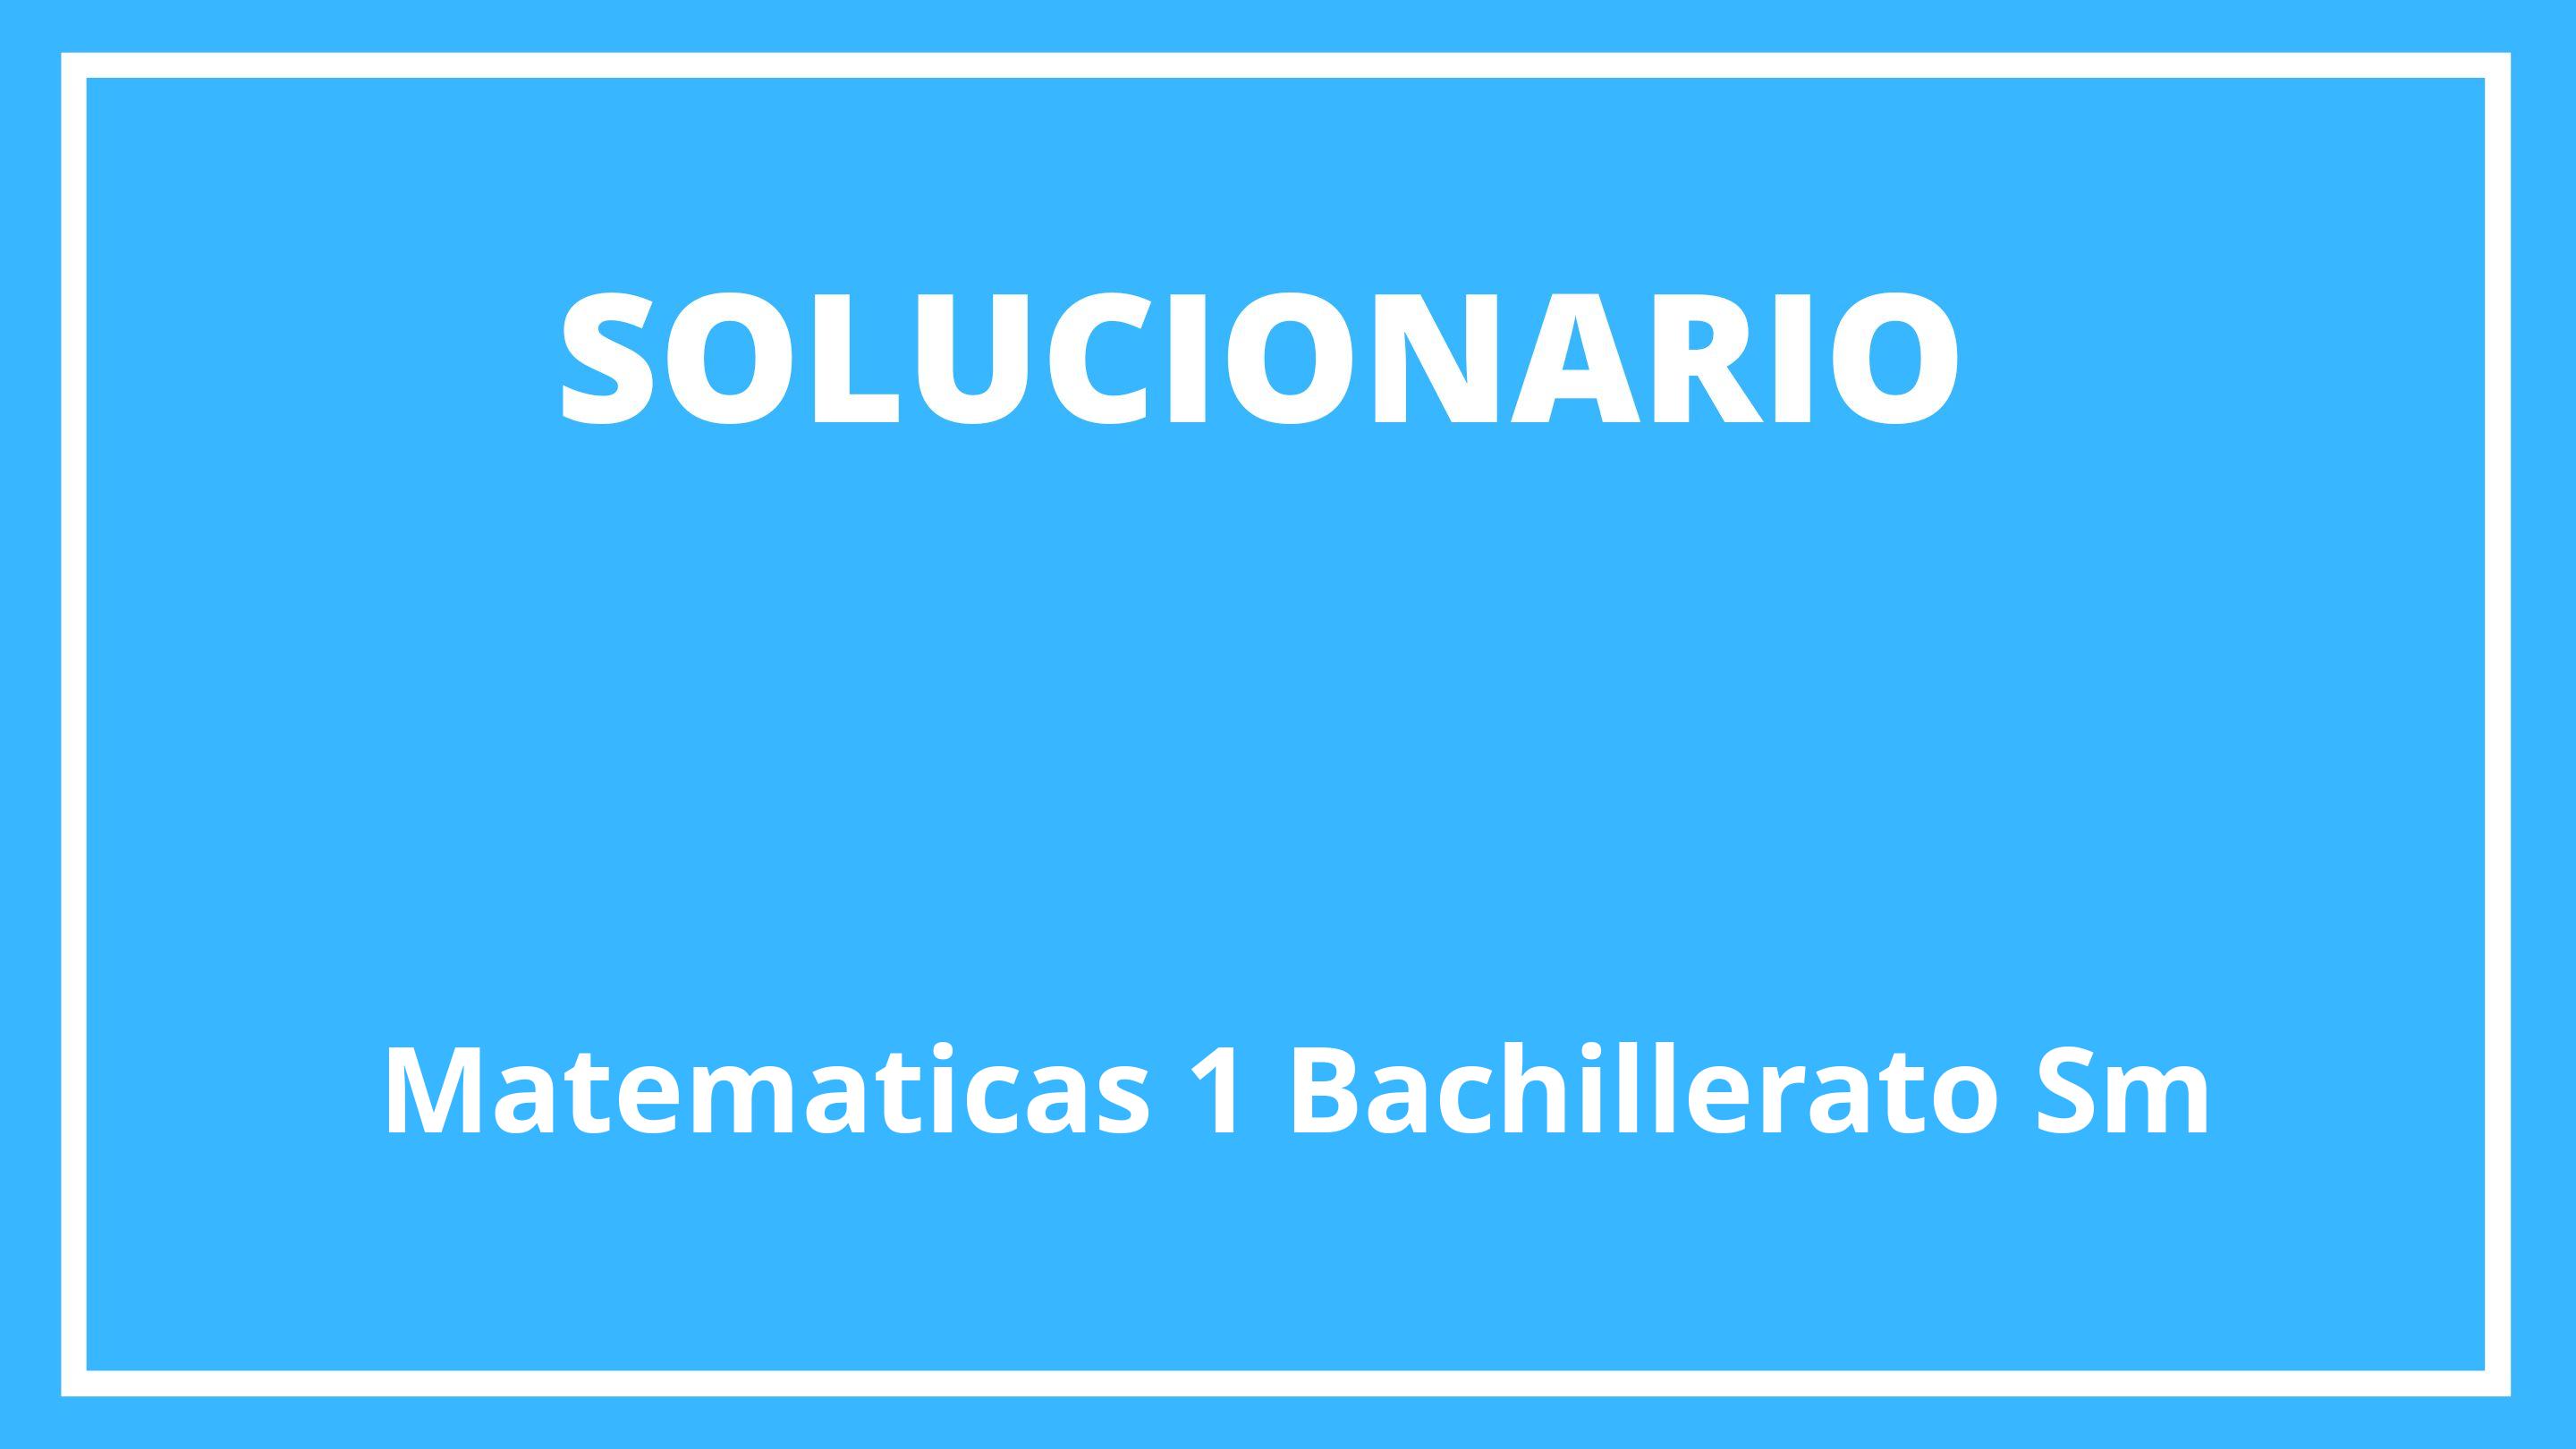 Solucionario Matematicas 1 Bachillerato Sm